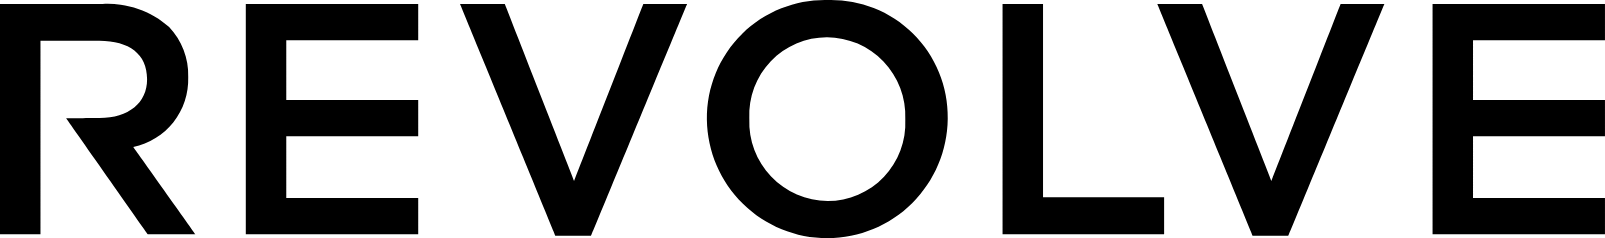 Revolve logo large (transparent PNG)